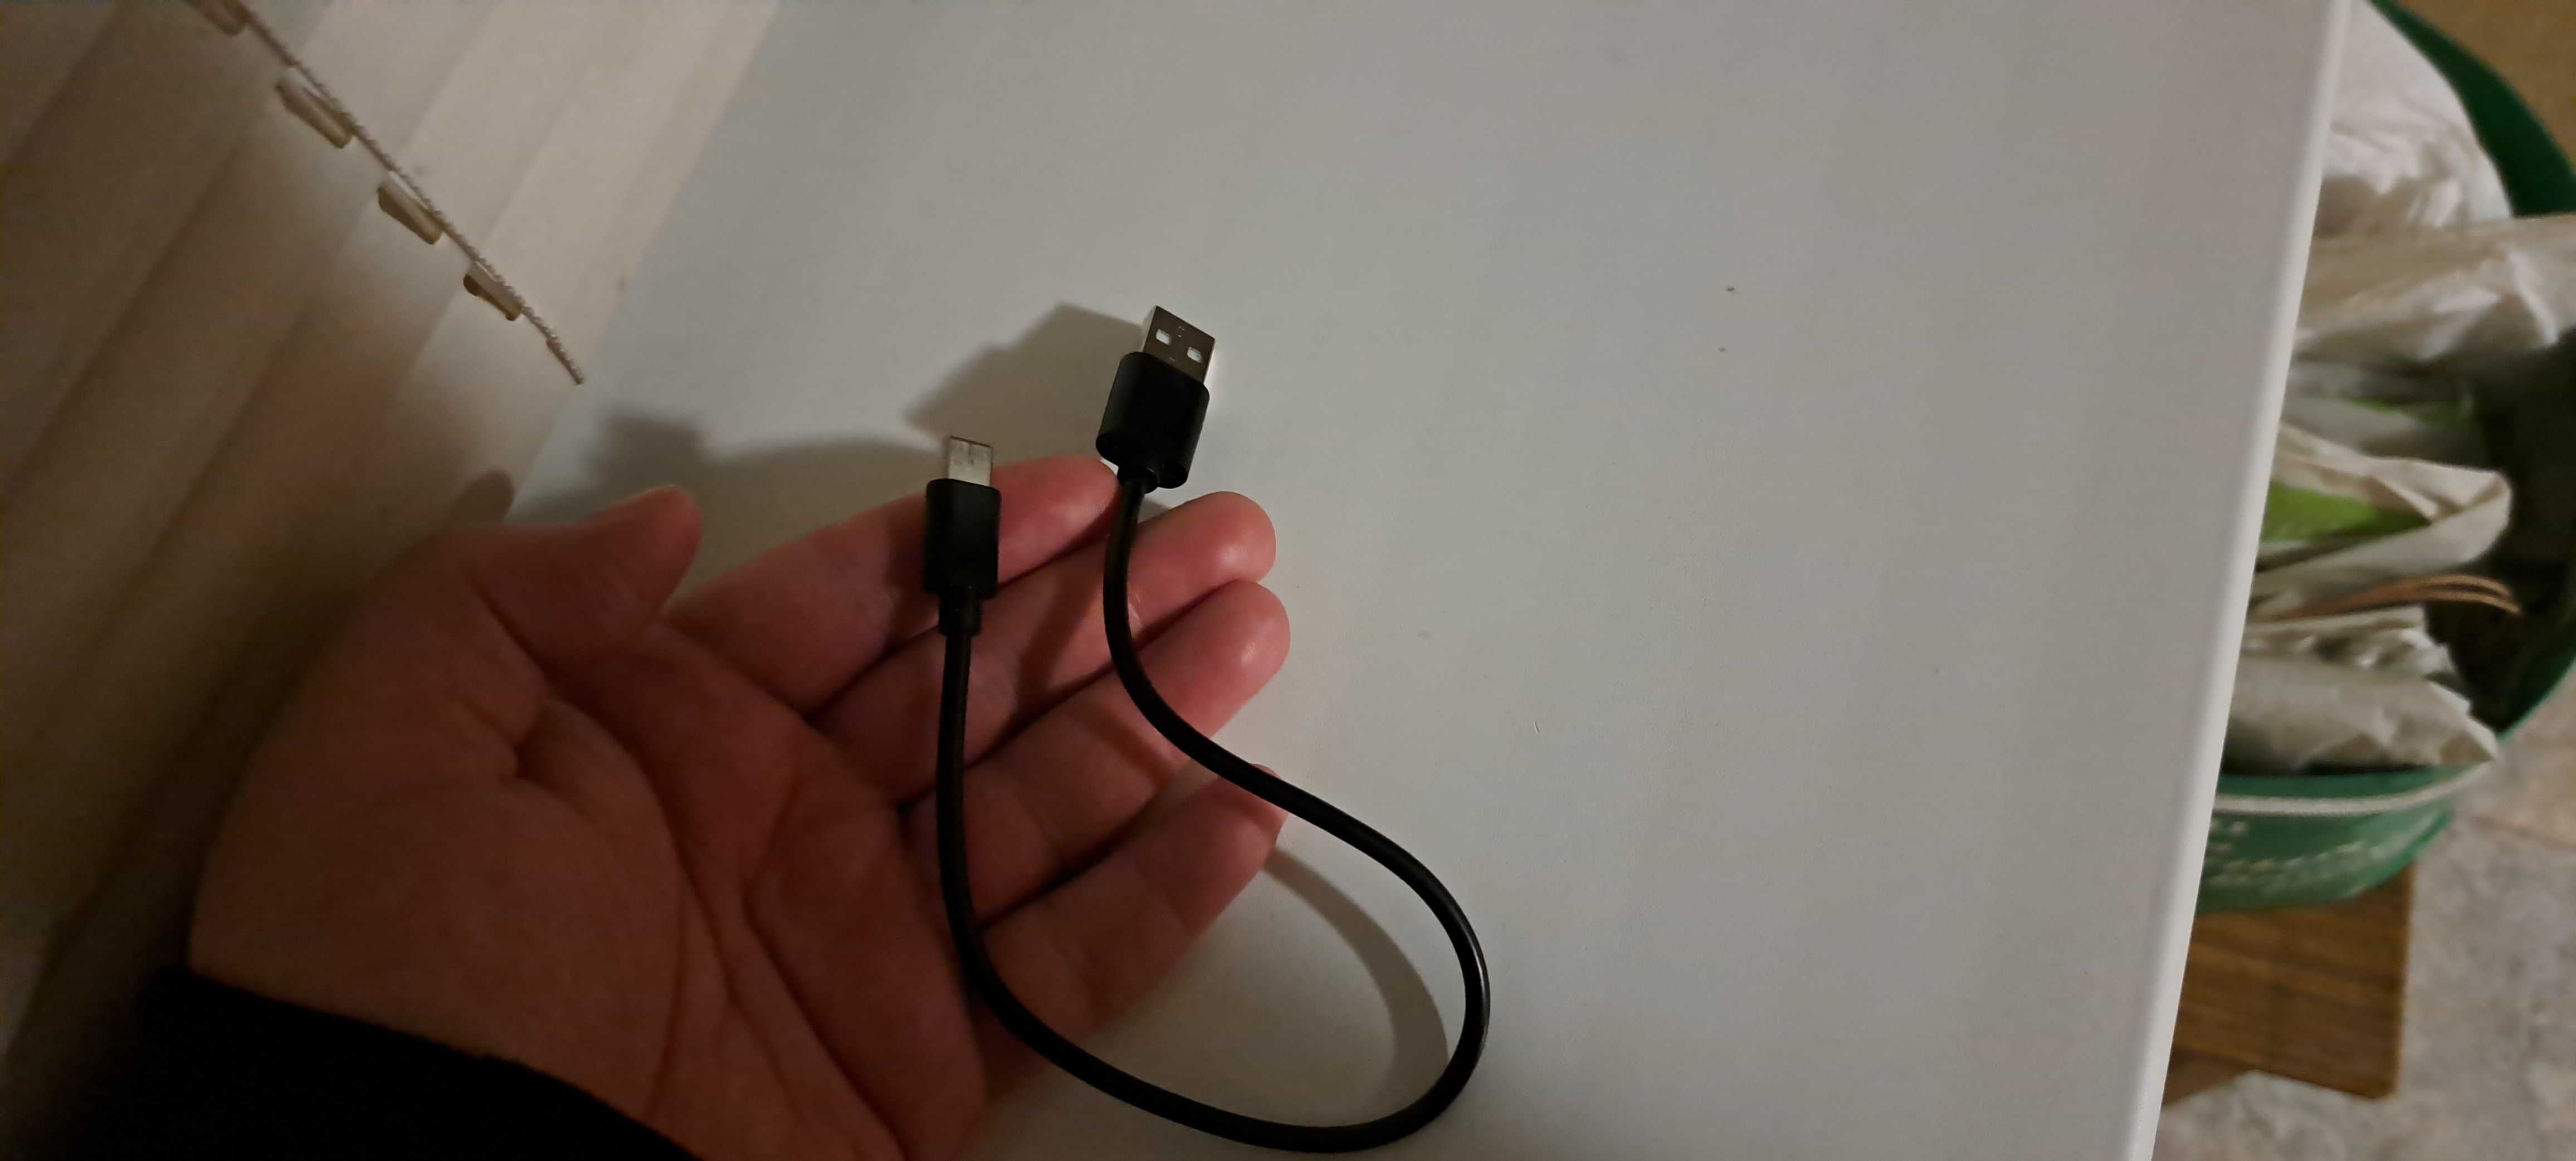 Кабель USB на USB type C длина 30 см